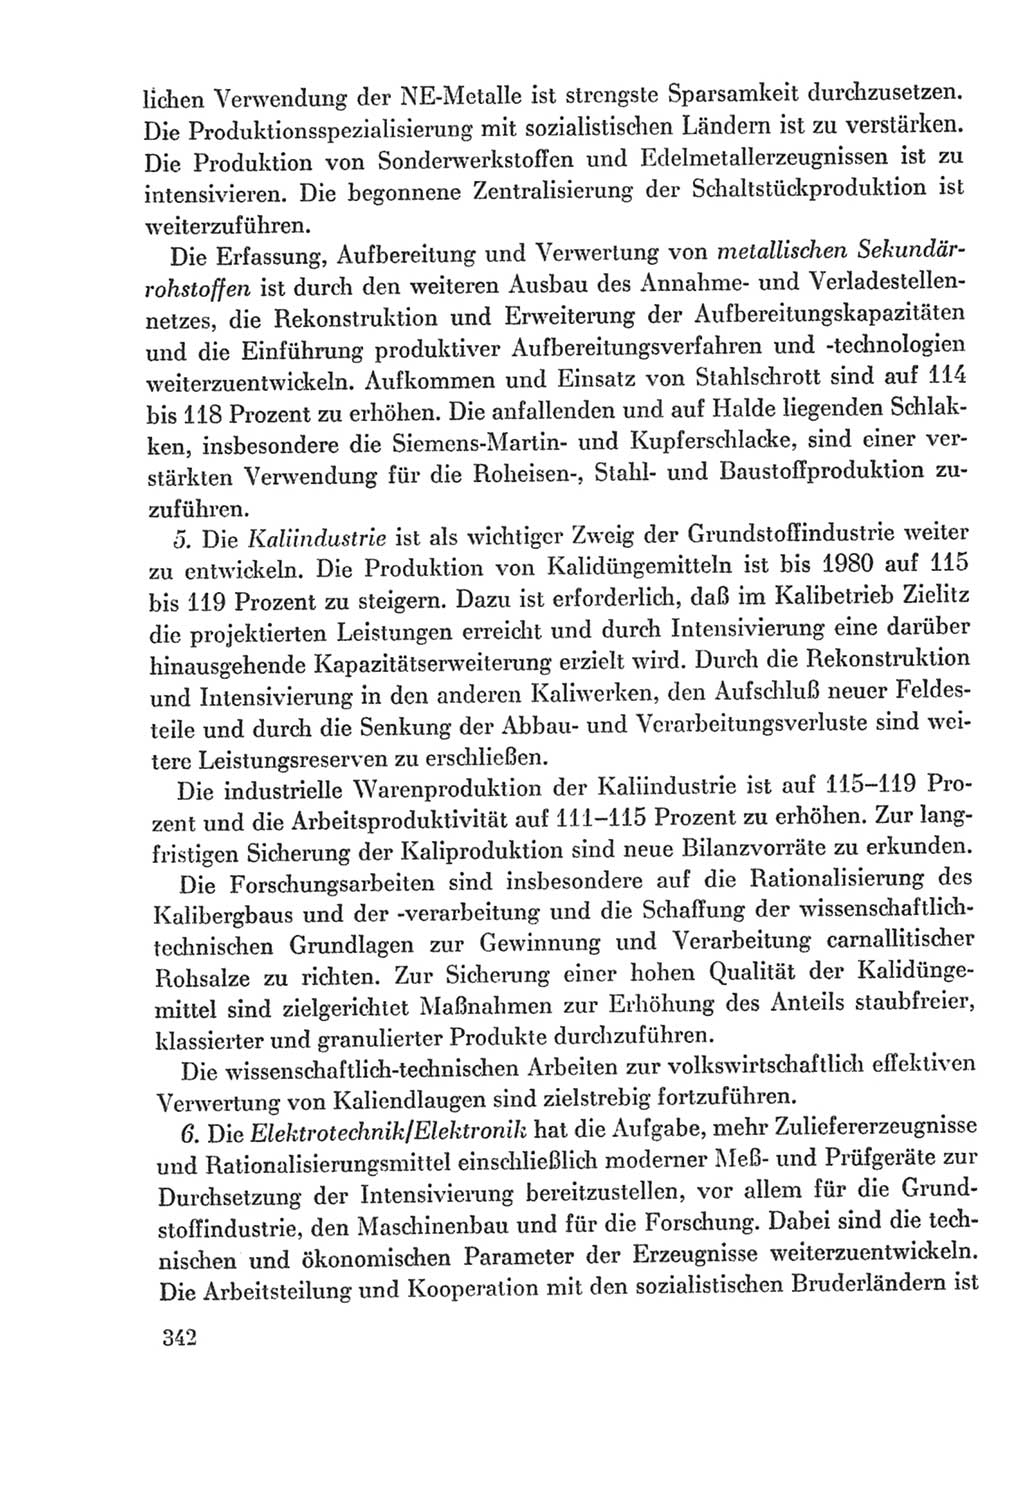 Protokoll der Verhandlungen des Ⅸ. Parteitages der Sozialistischen Einheitspartei Deutschlands (SED) [Deutsche Demokratische Republik (DDR)] 1976, Band 2, Seite 342 (Prot. Verh. Ⅸ. PT SED DDR 1976, Bd. 2, S. 342)